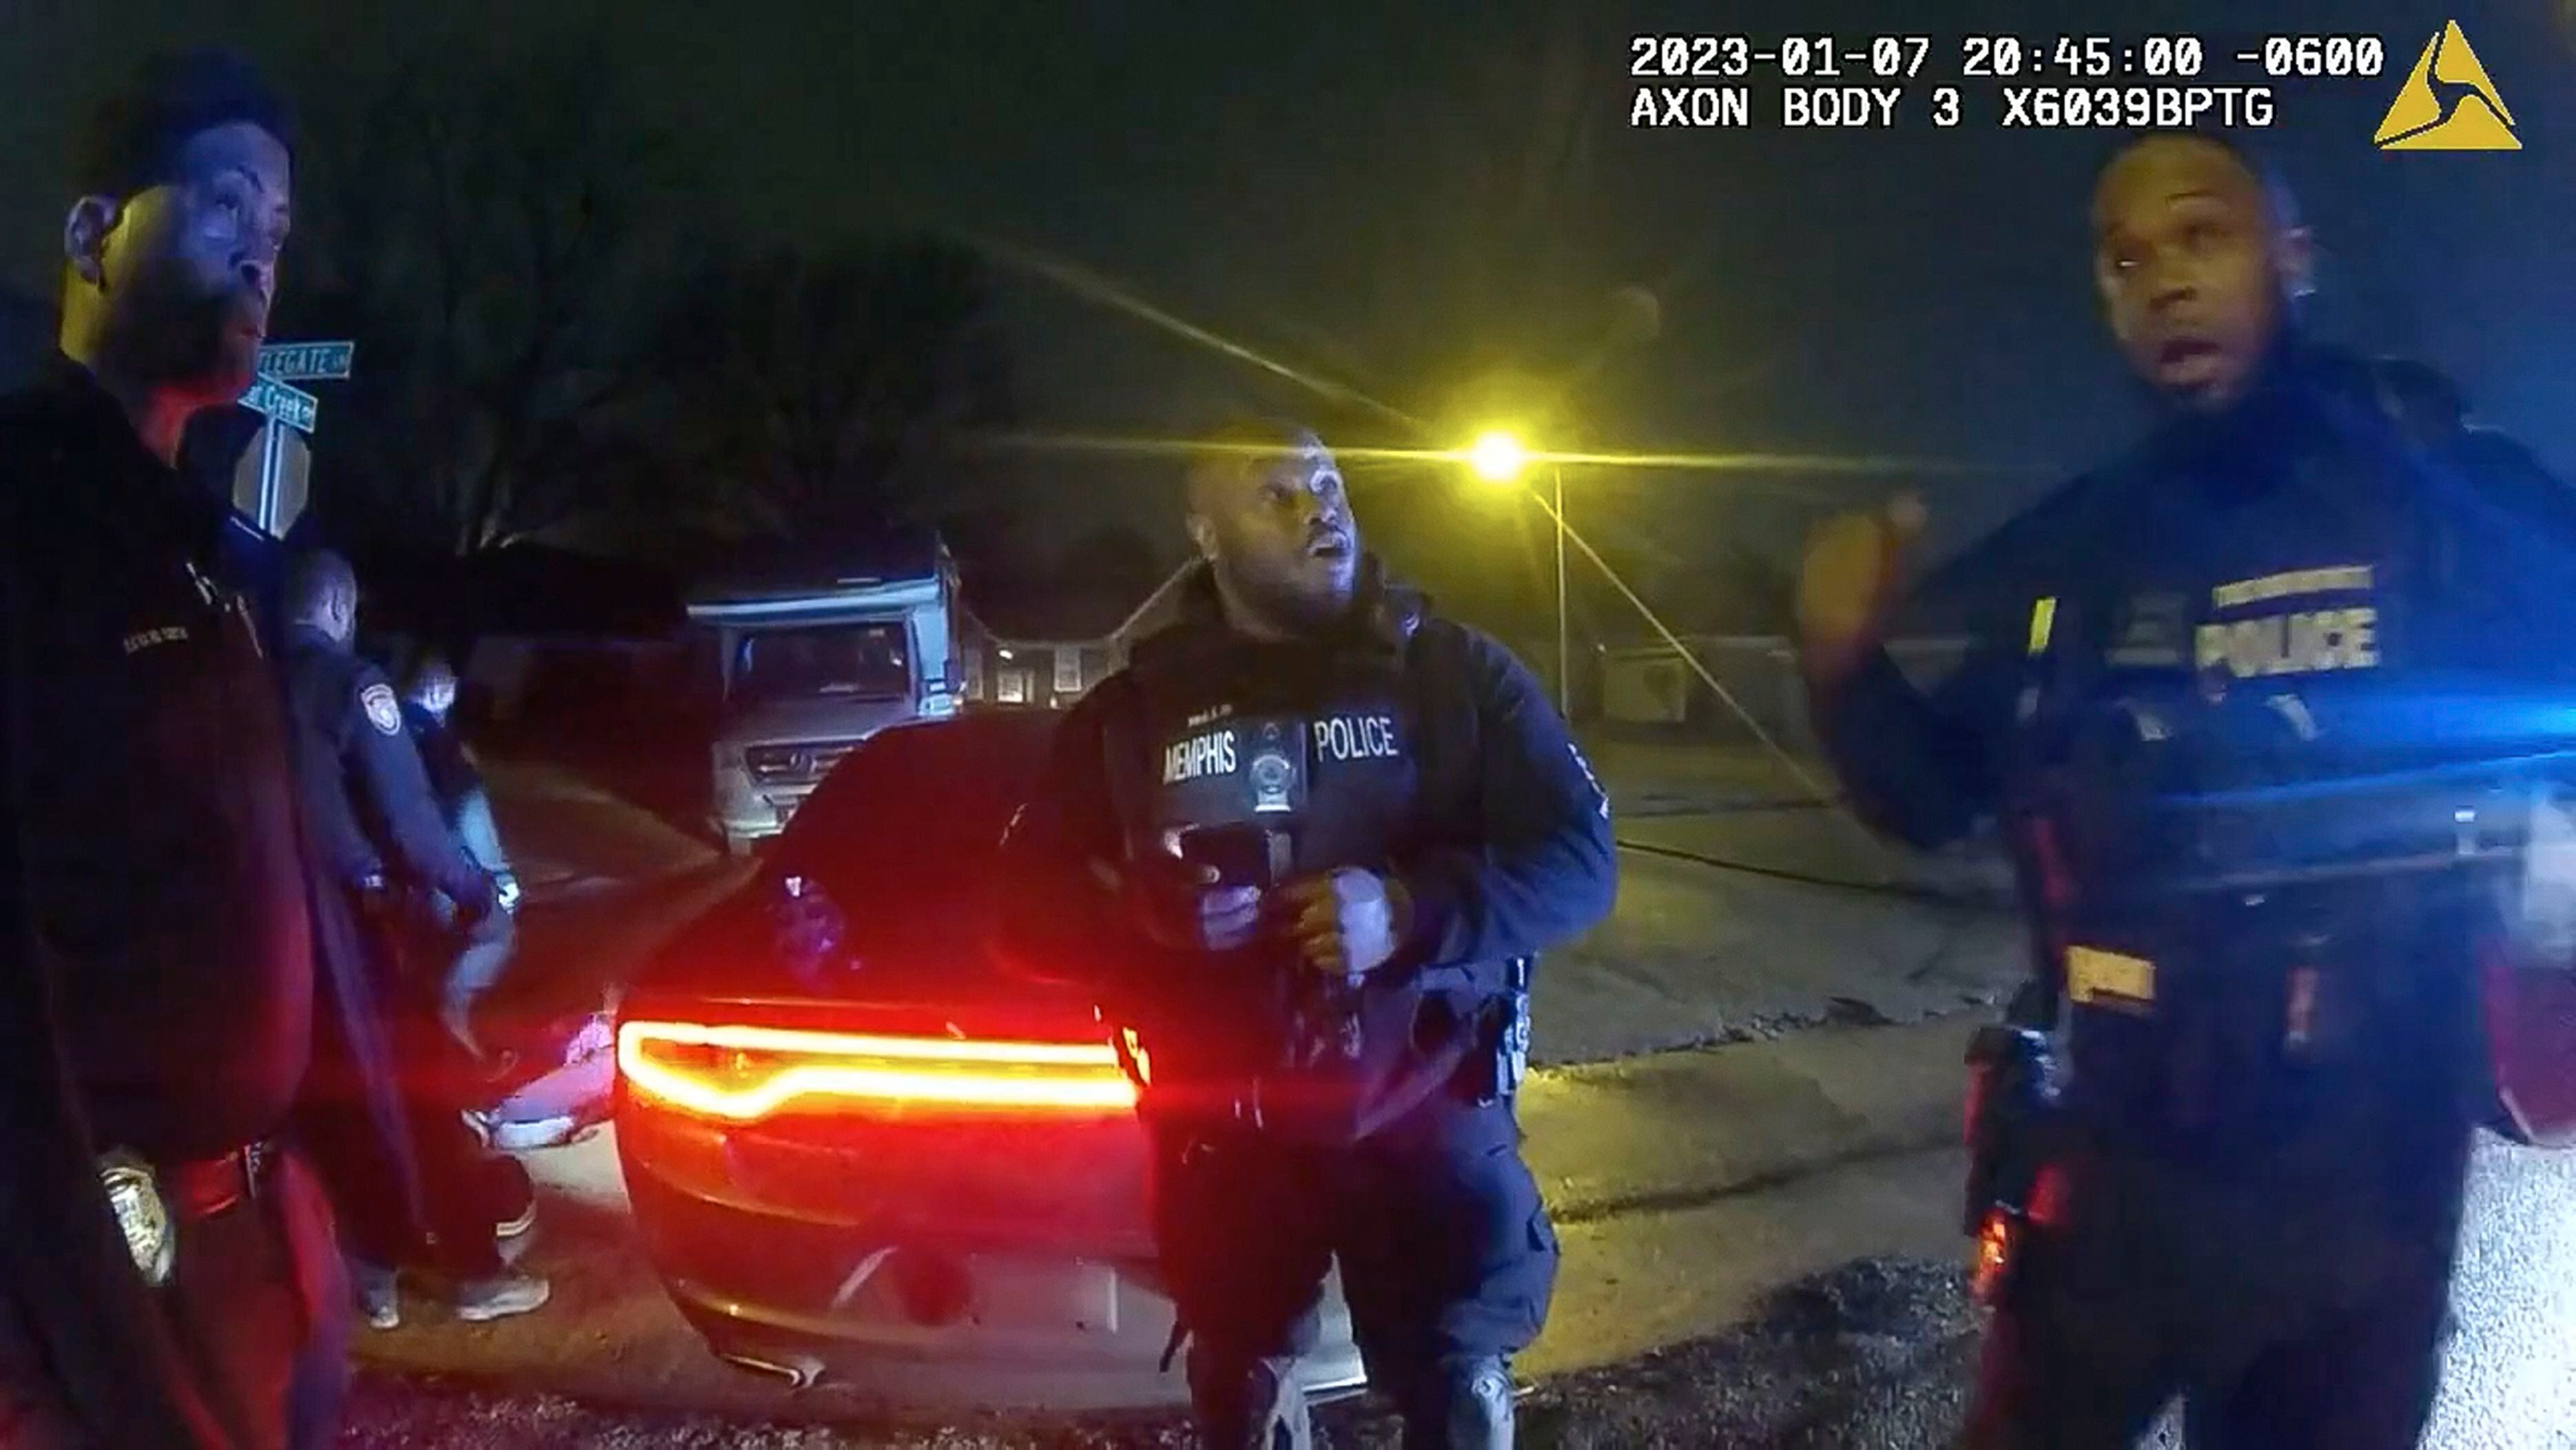 Captura de vídeo donde se muestra a alguno de los policías involucrados en la brutal agresión contra Tyre Nichols en Memphis, el día 7.